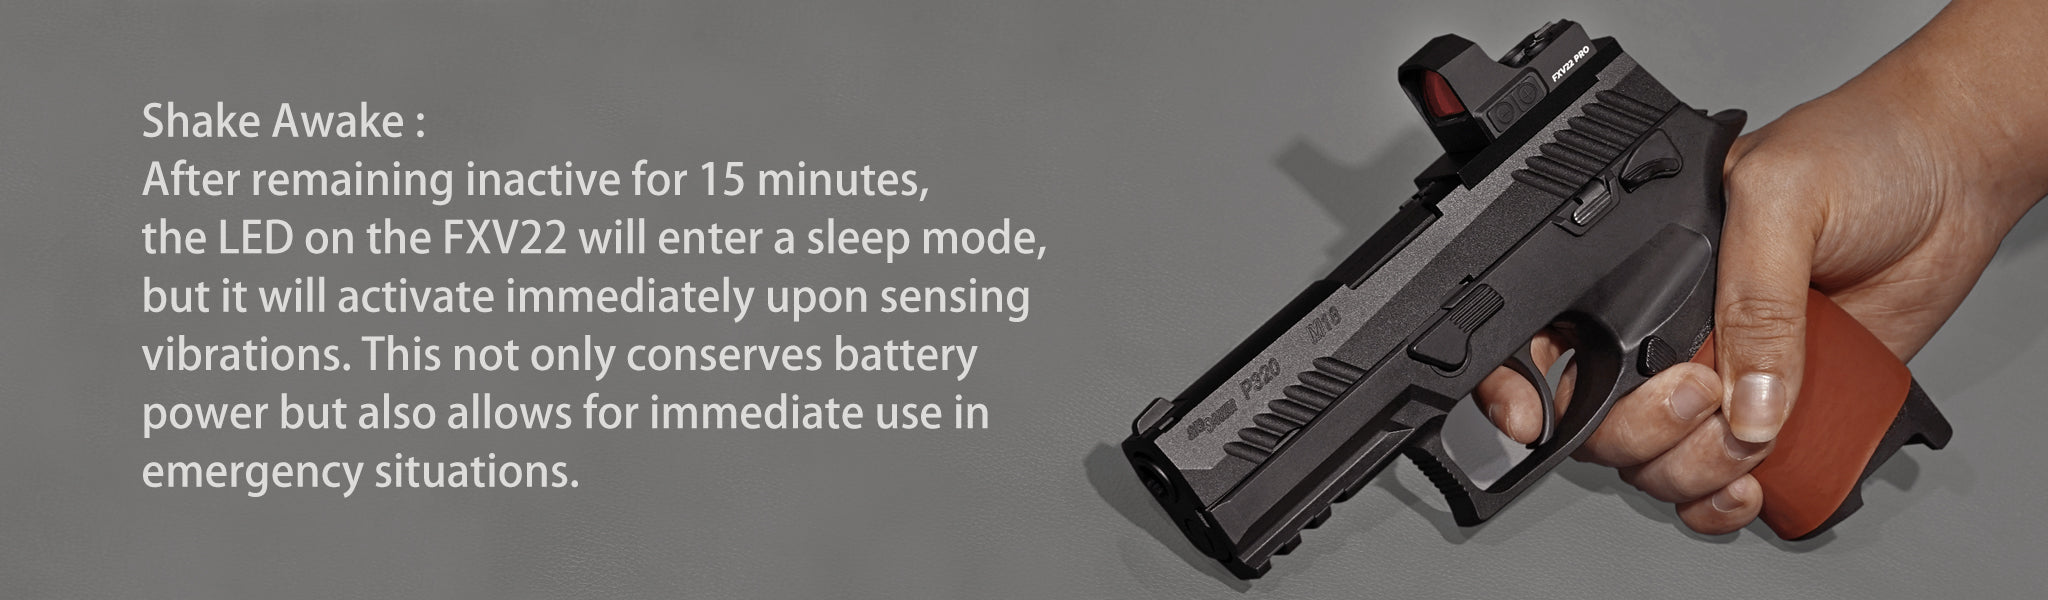 摇动唤醒：保持不活动状态 15 分钟后，FXV22 上的 LED 将进入睡眠模式，但在感应到振动时会立即激活。 这不仅可以节省电池电量，还可以在紧急情况下立即使用。